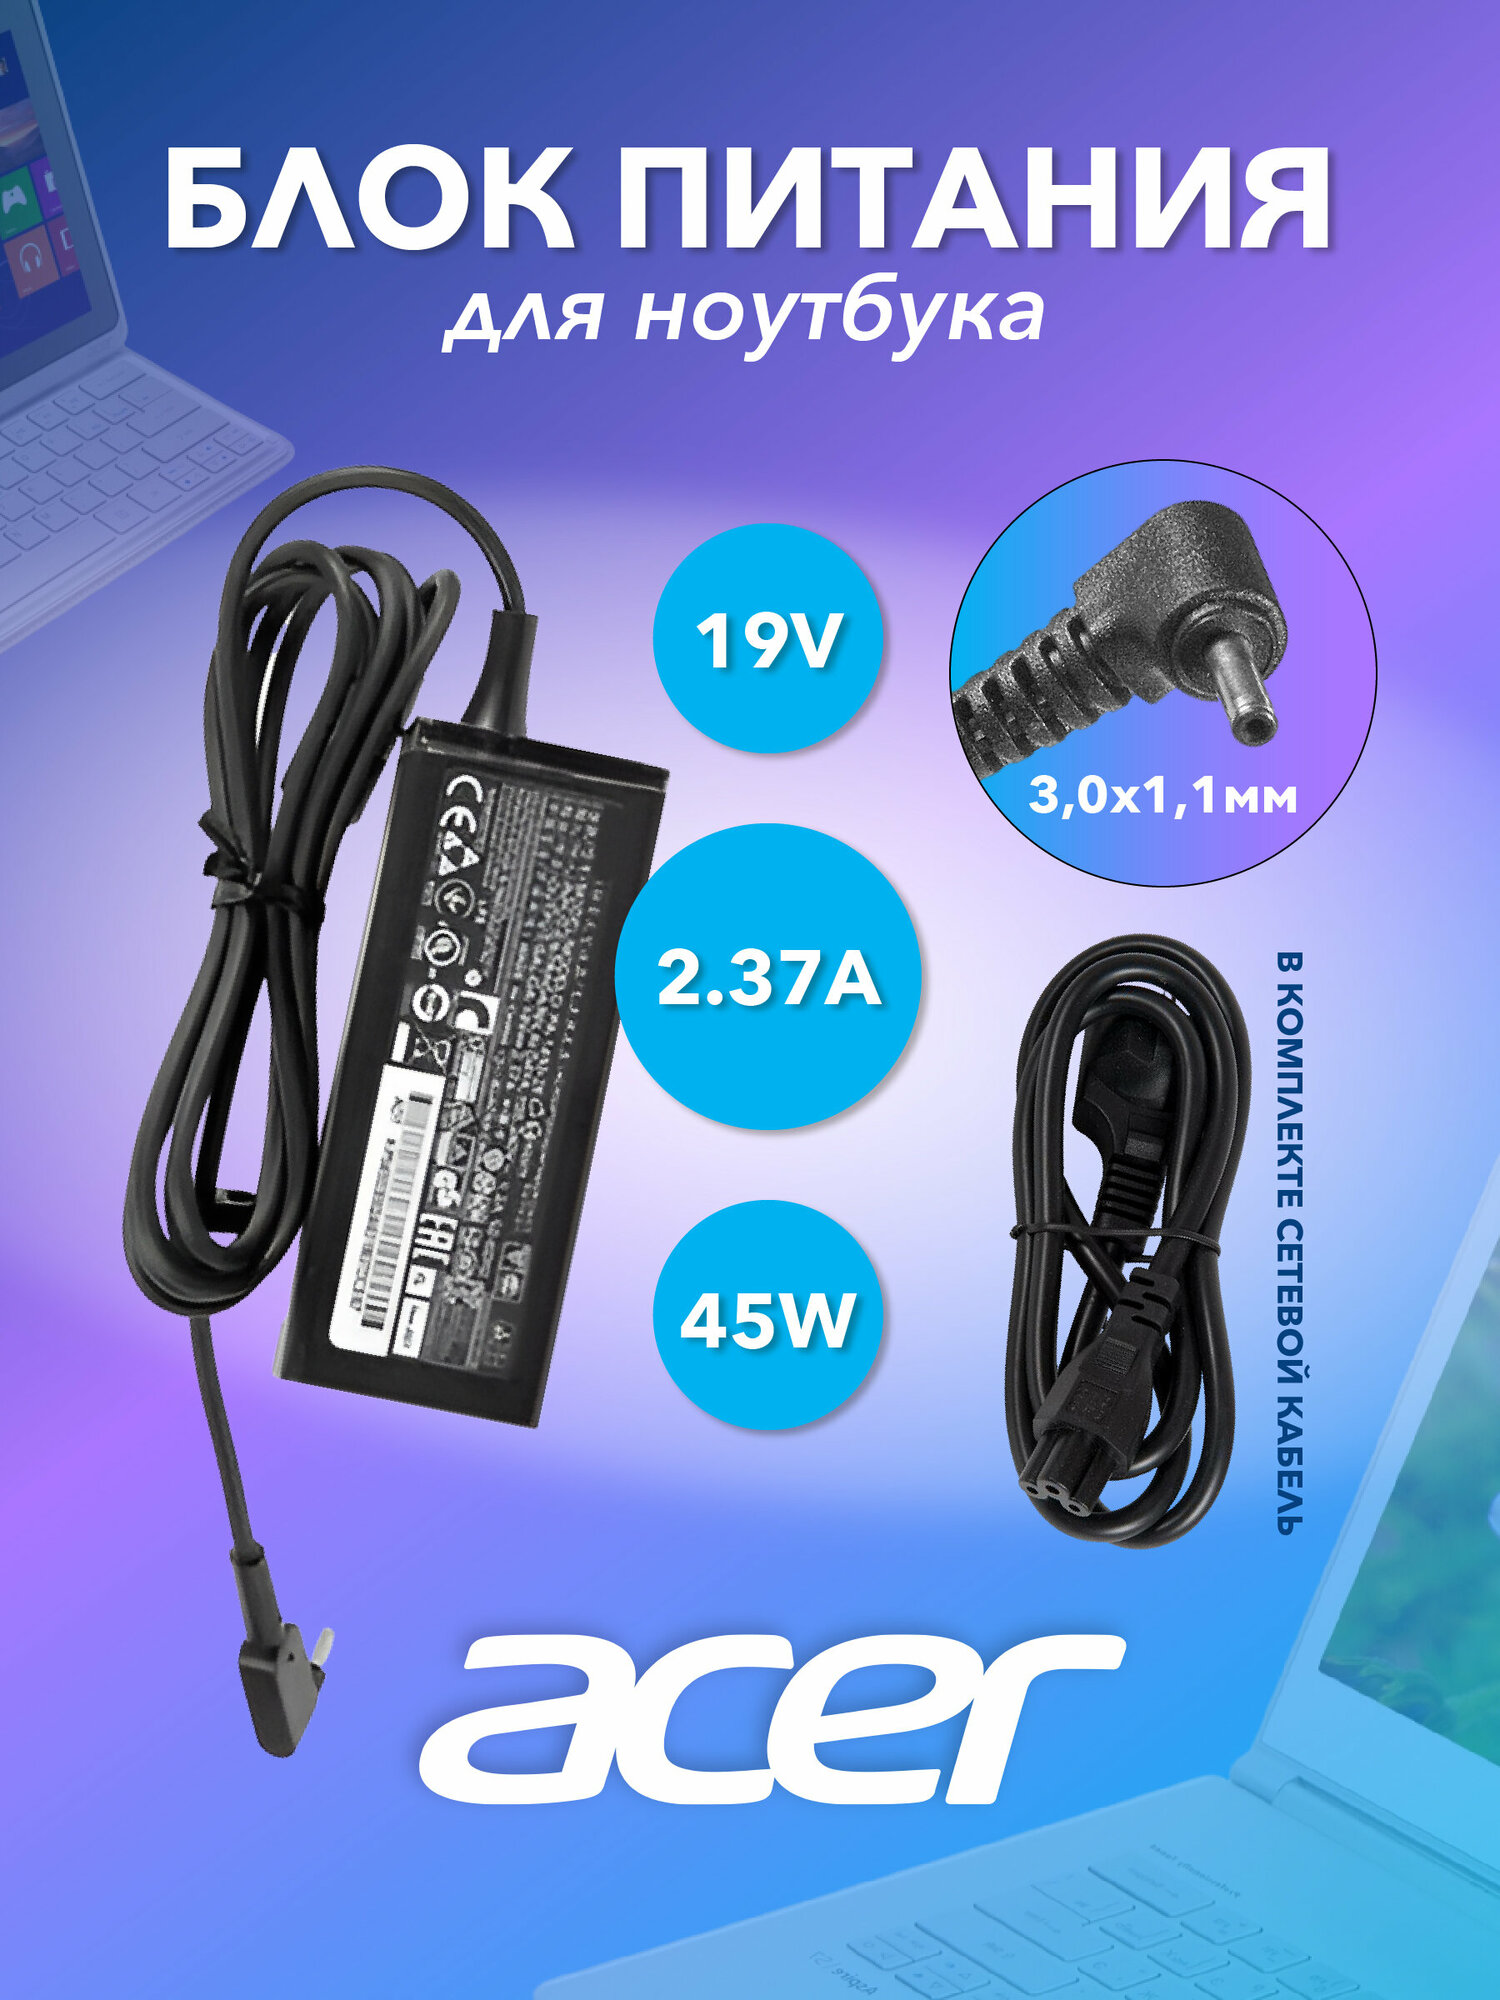 Блок питания для Acer 19V 2.37А, 45W, 3.0x1.1 оригинал